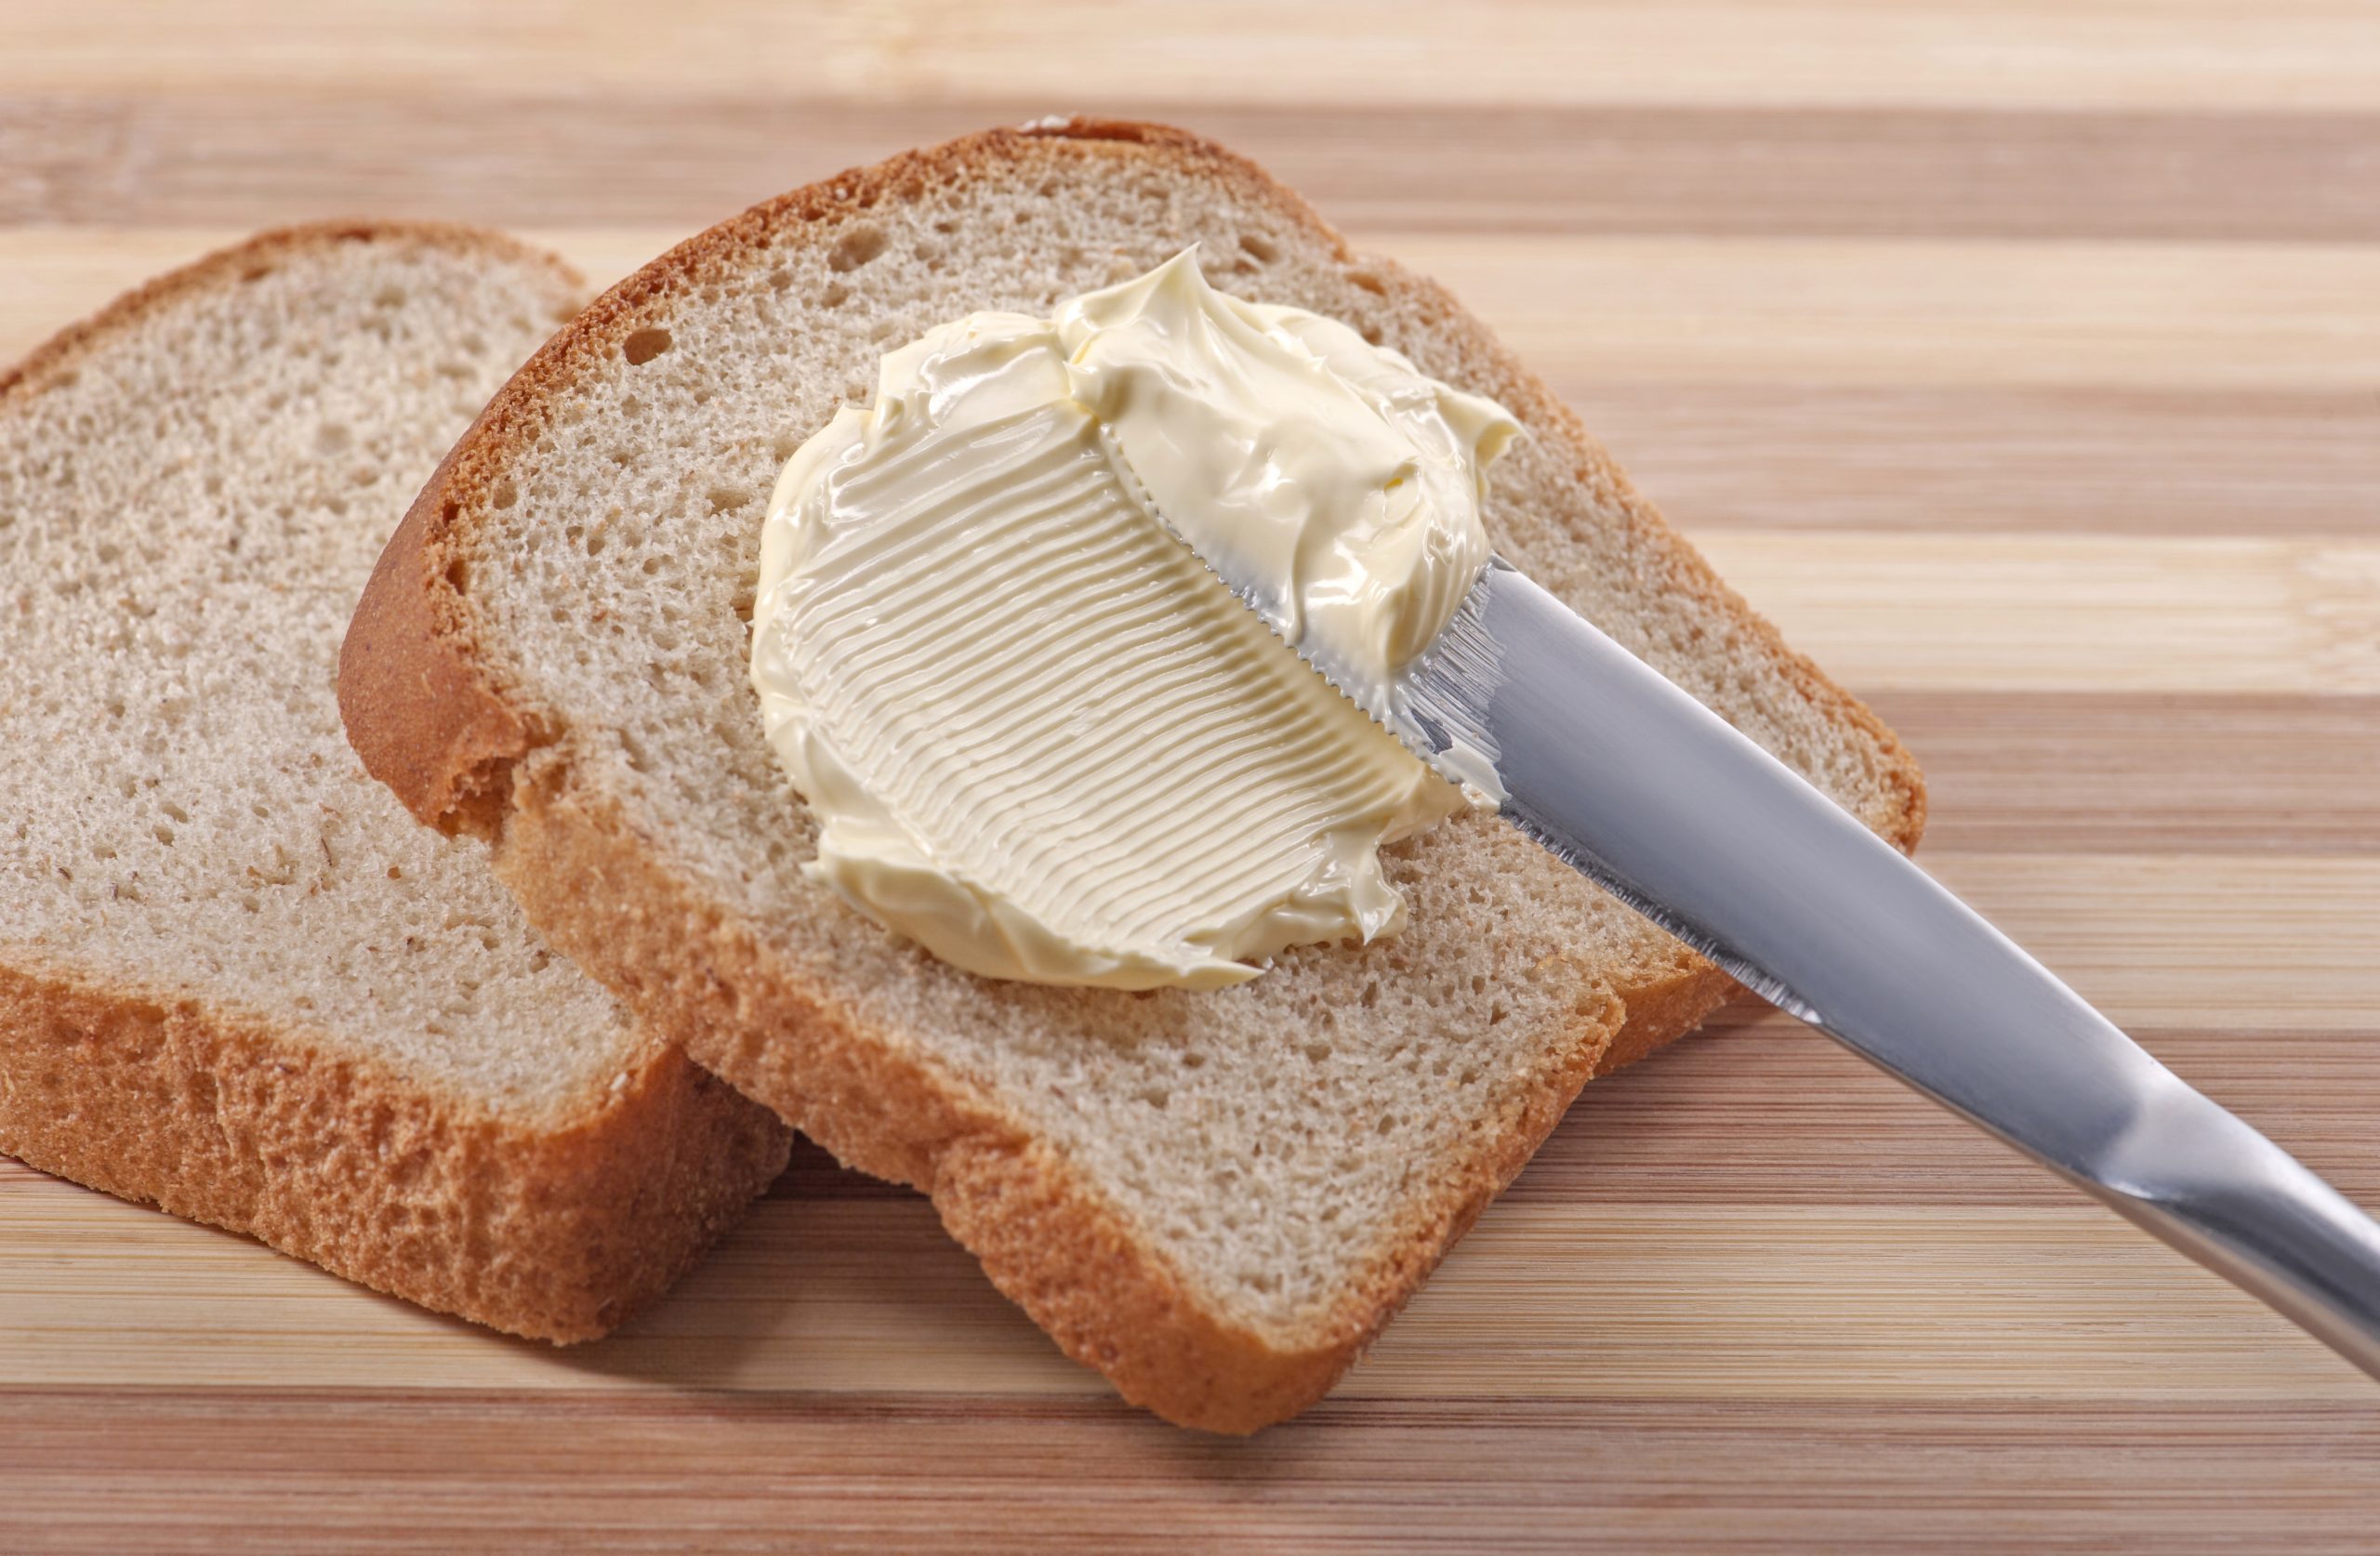 Хлеб с маслом грамм. Бутерброд с маслом. Хлеб с маслом. Бутерброд хлеб с маслом. Бутерброд со сливочным маслом.